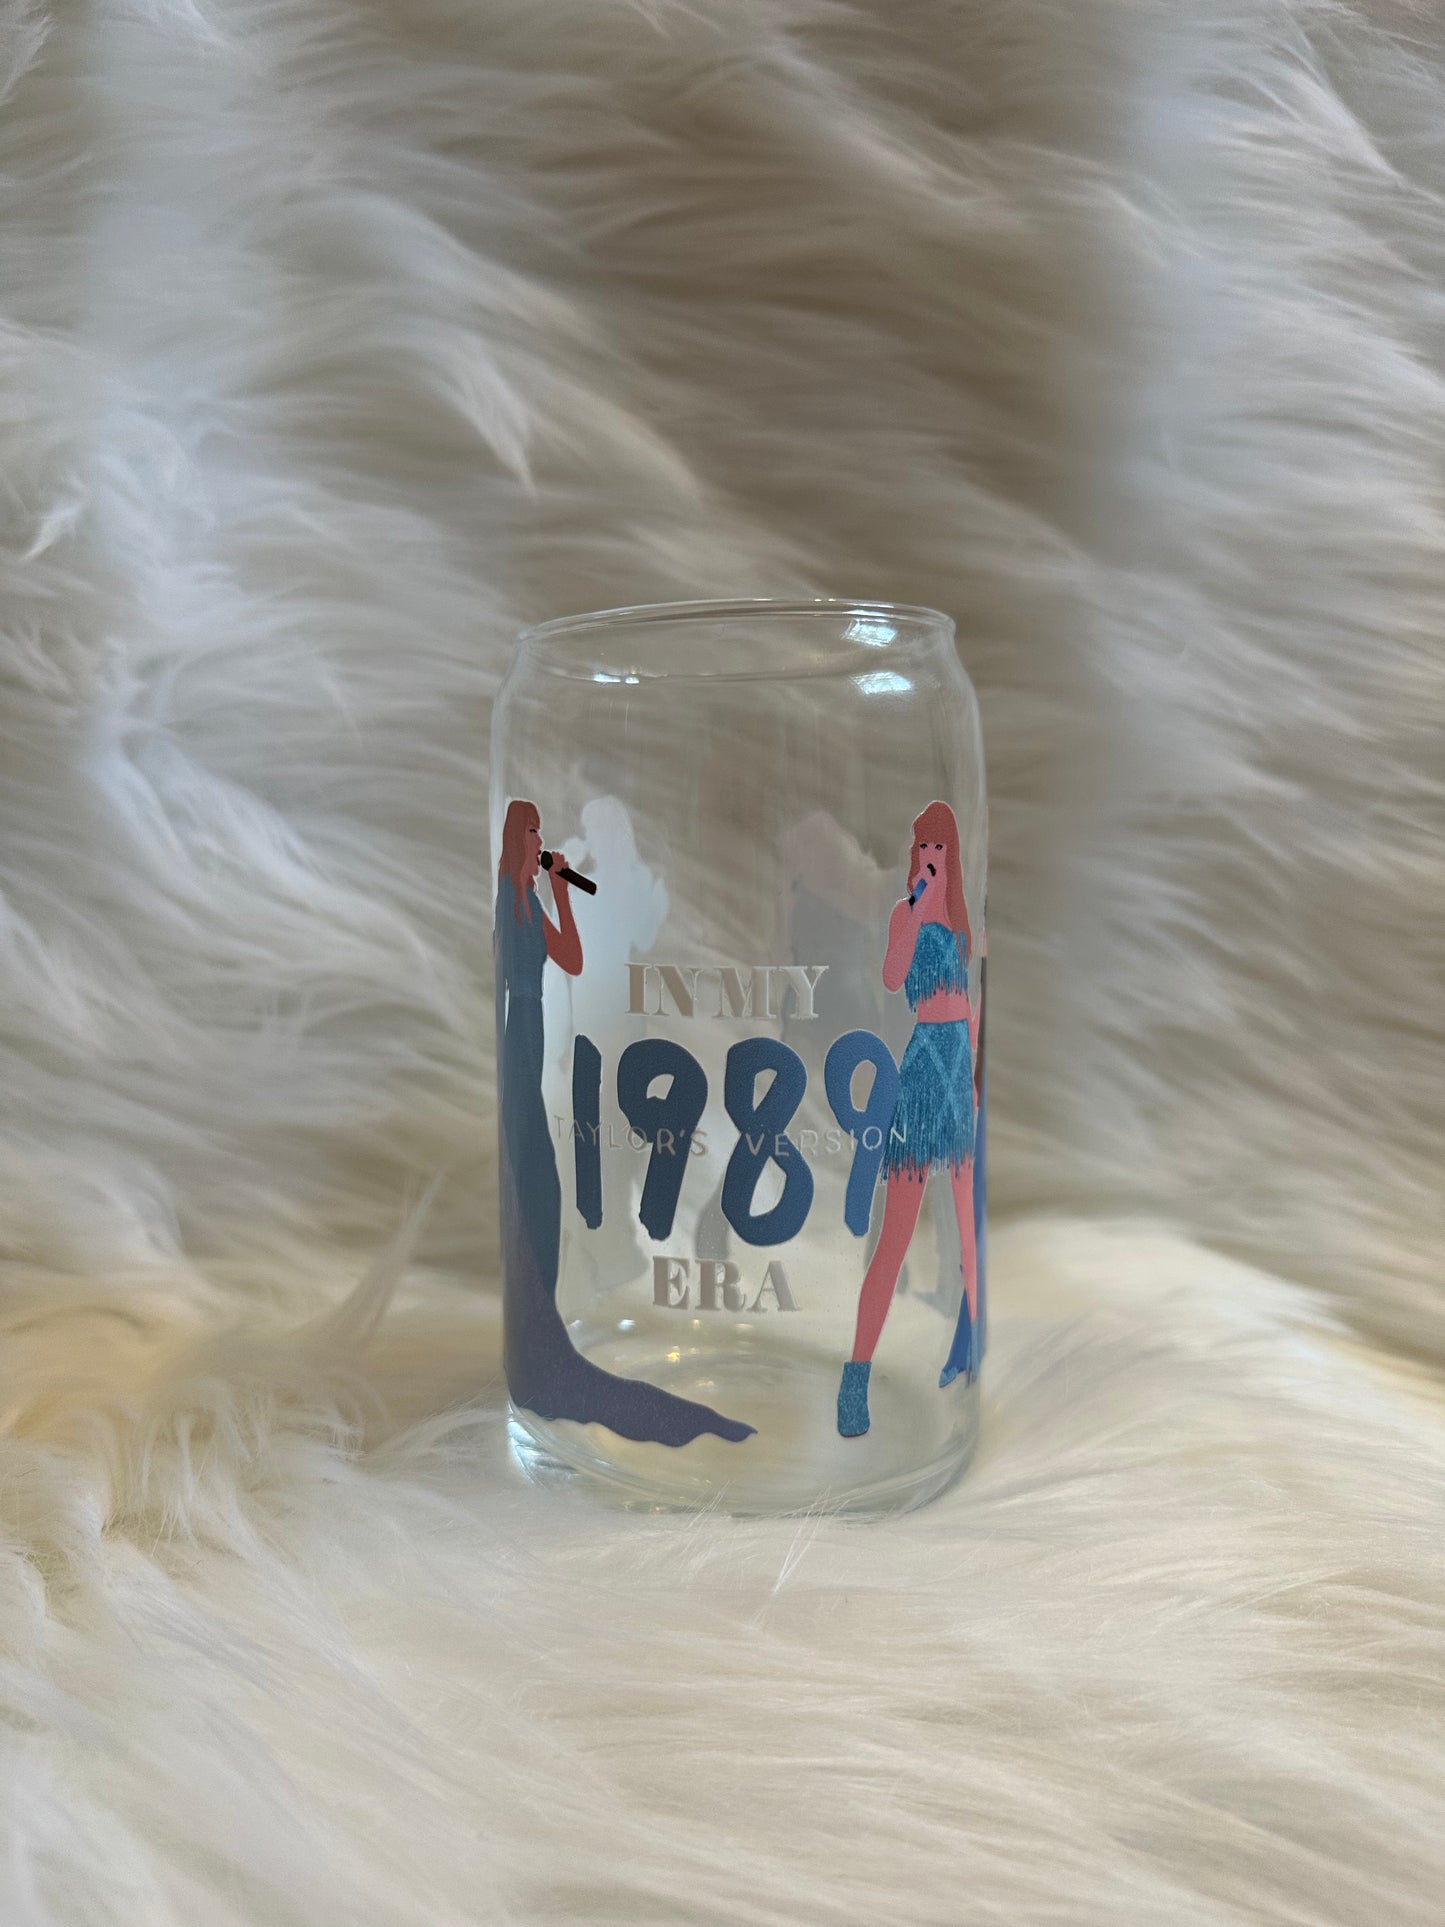 T Swift 1989 in my era glass cup